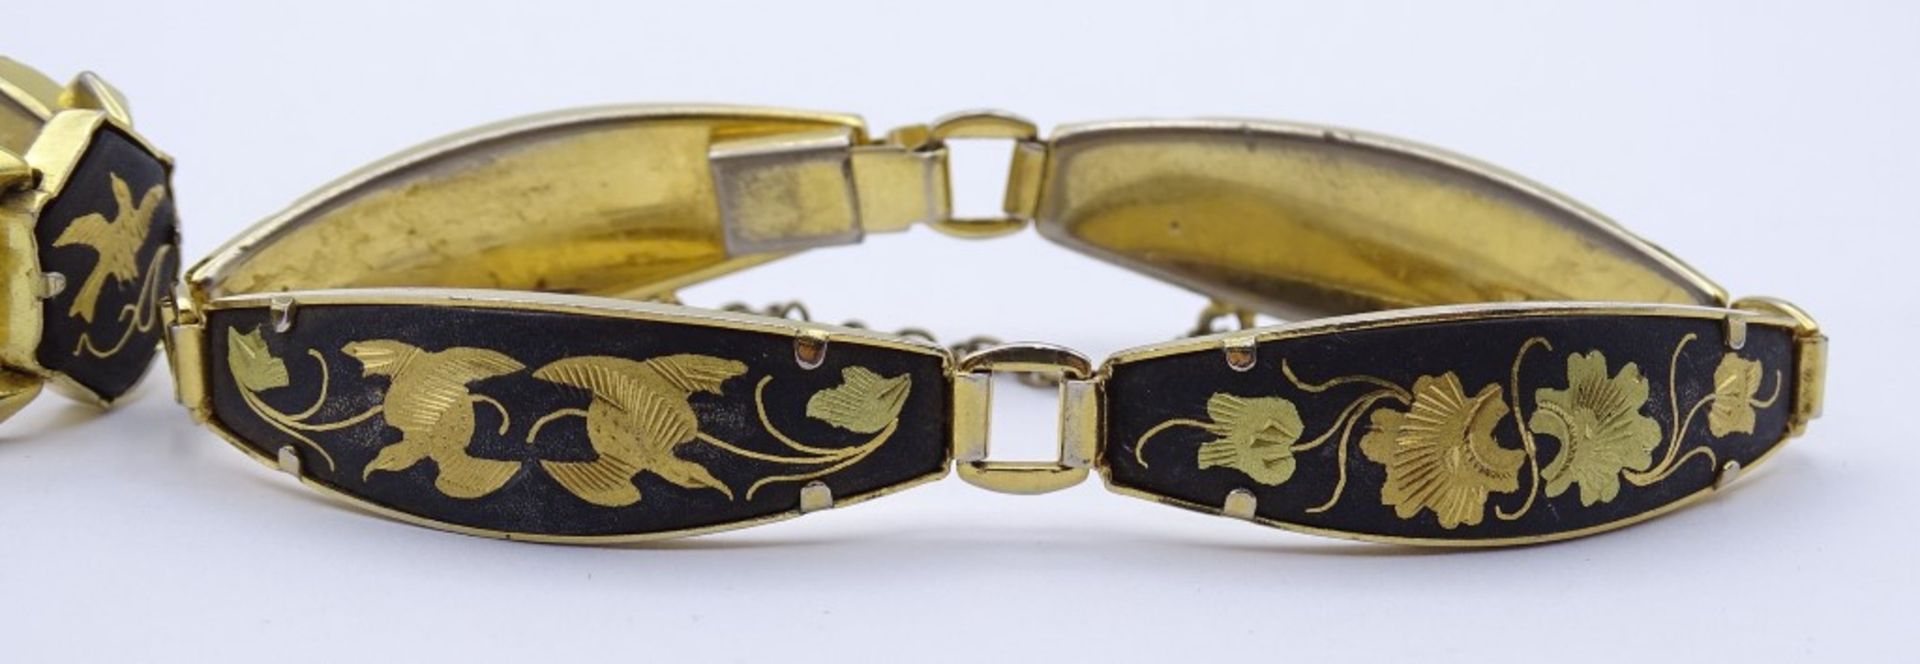 zwei goldfarbene Armbänder mit Tier und Blumenmotiven - Image 3 of 4